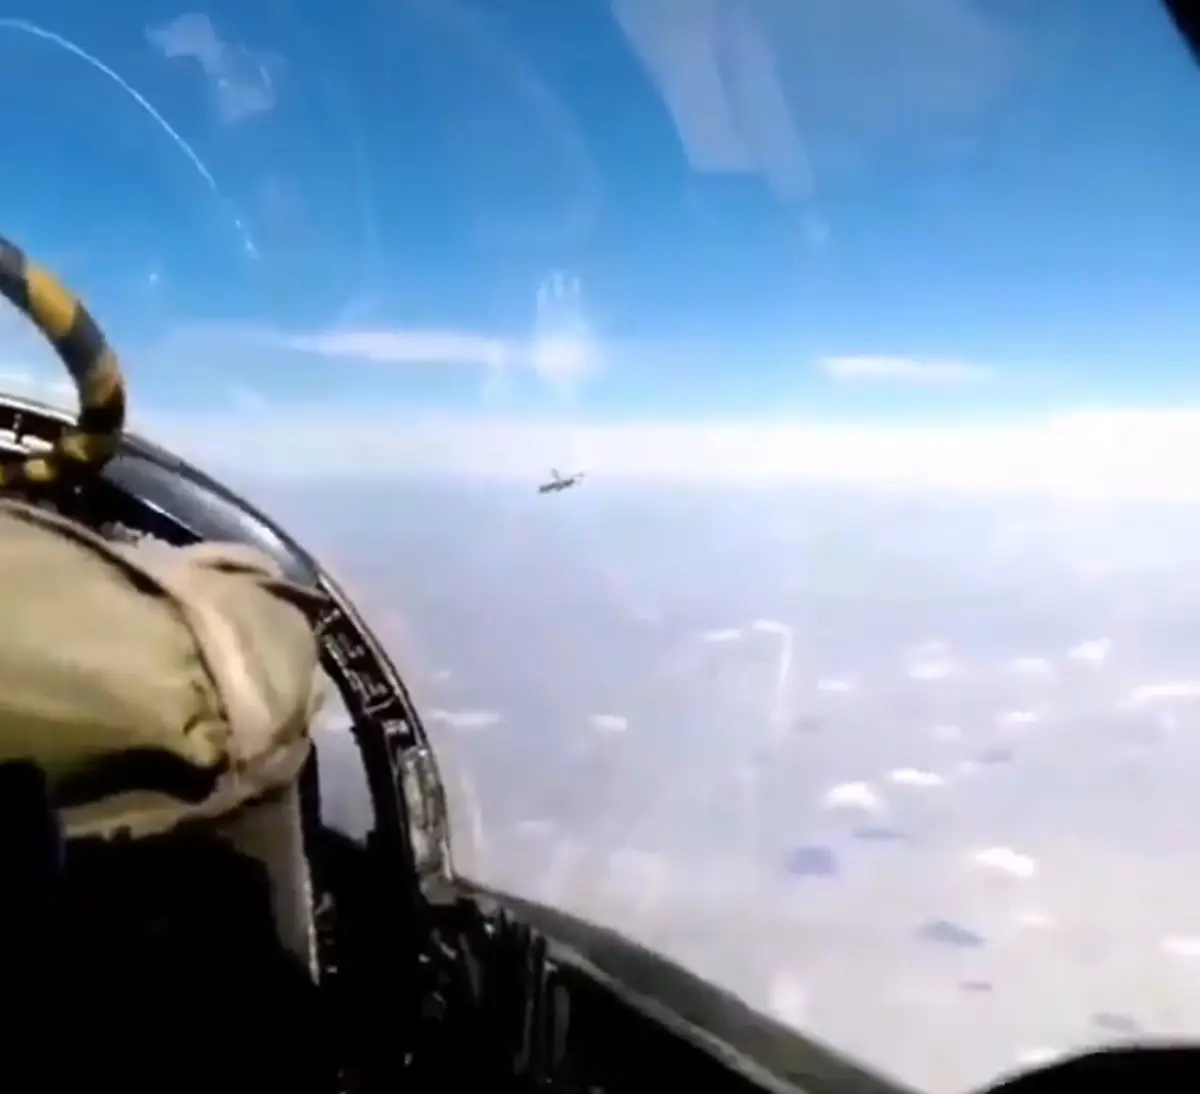 شاهکار خلبان ایرانی در آسمان عراق + ویدئو